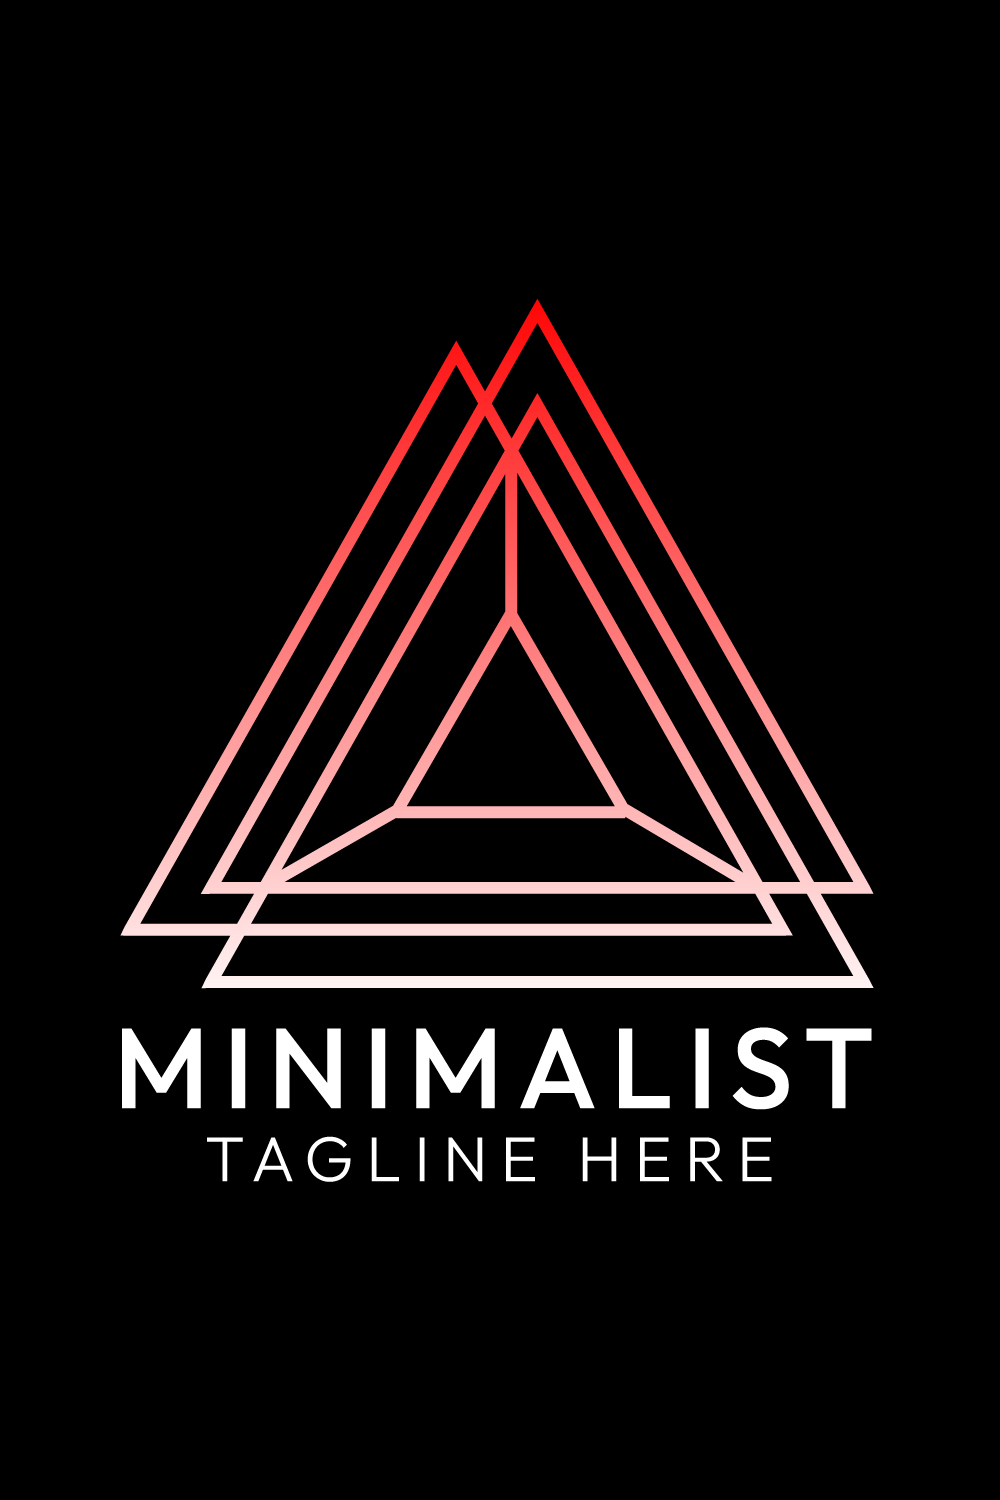 Minimalist Triangle Logo Design Bundle for Brands | Master Bundle pinterest preview image.